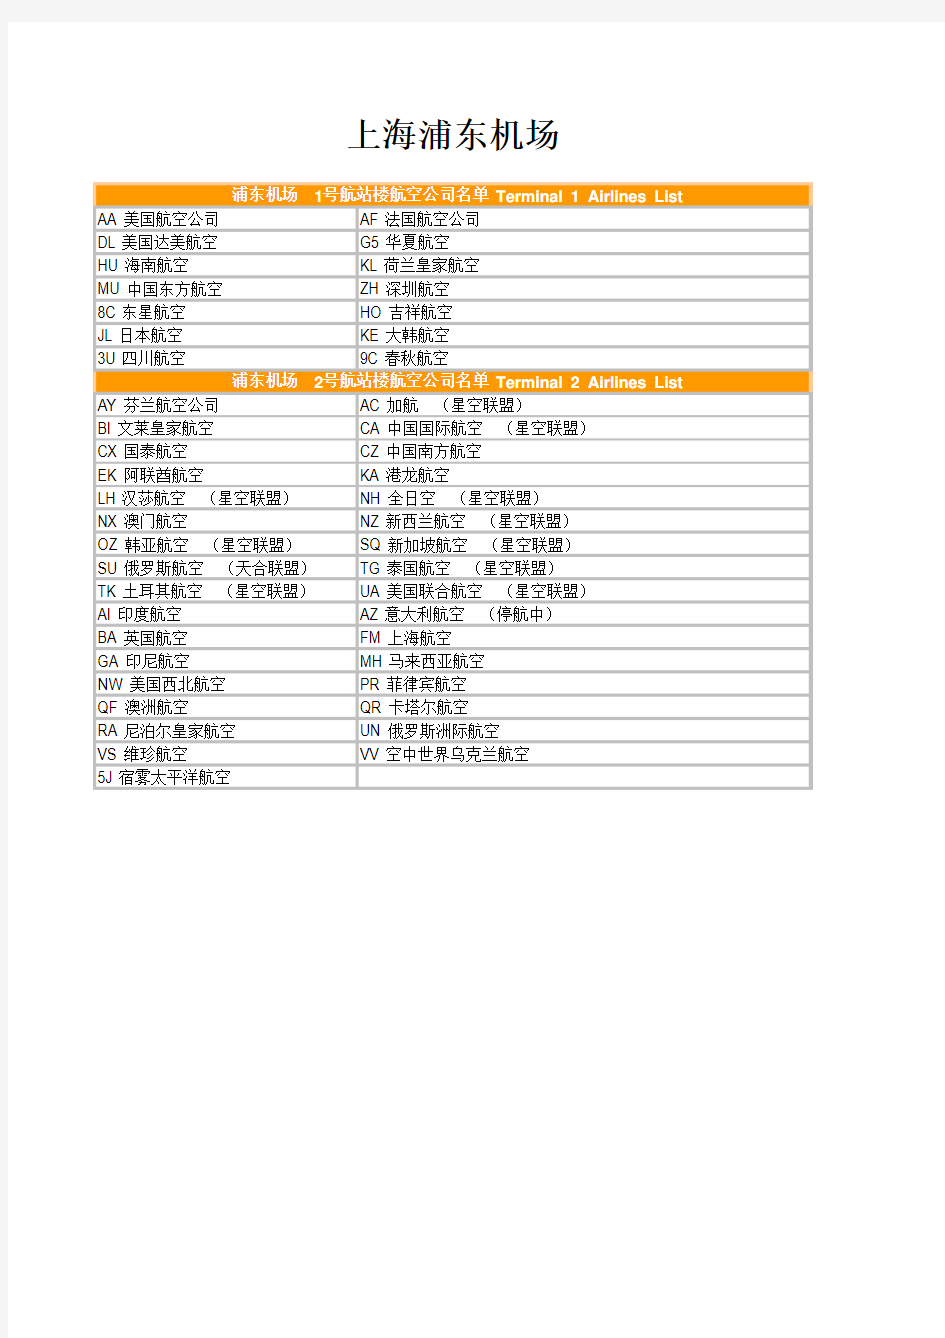 北京各航站楼航空公司分布列表